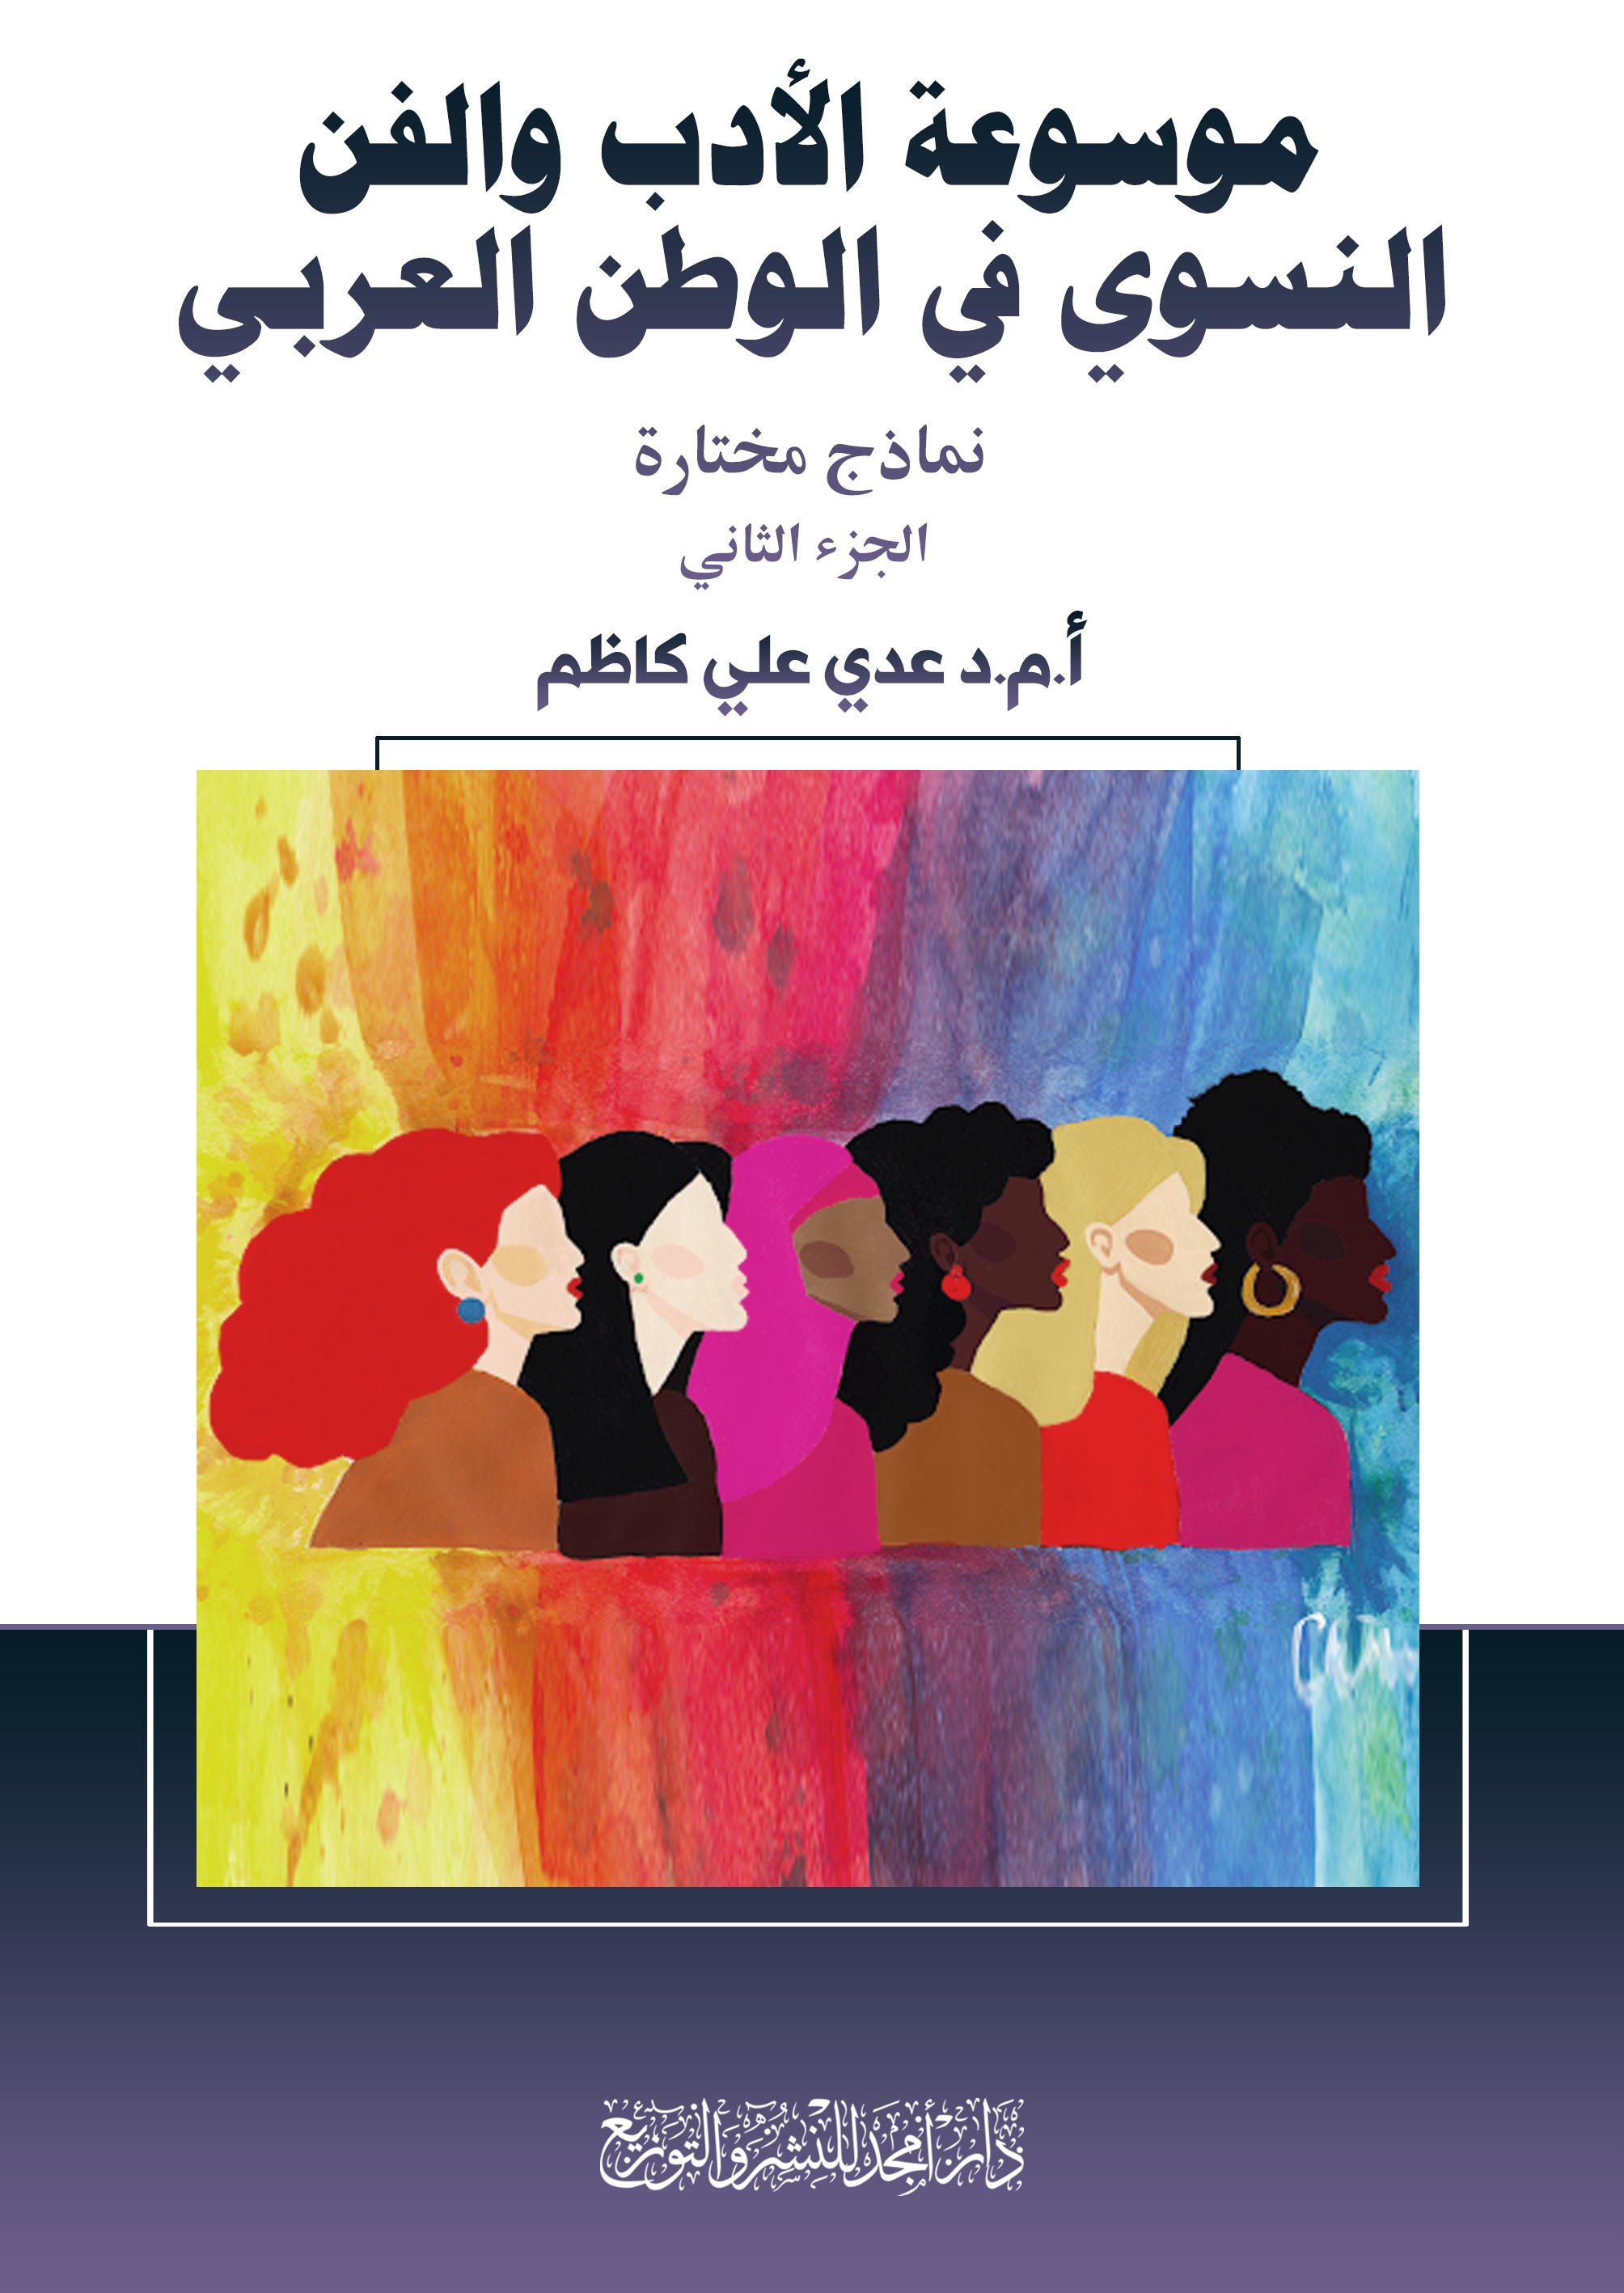 موسوعة الأدب والفن النسوي في الوطن العربي - نماذج مختارة ( الجزء الثاني )